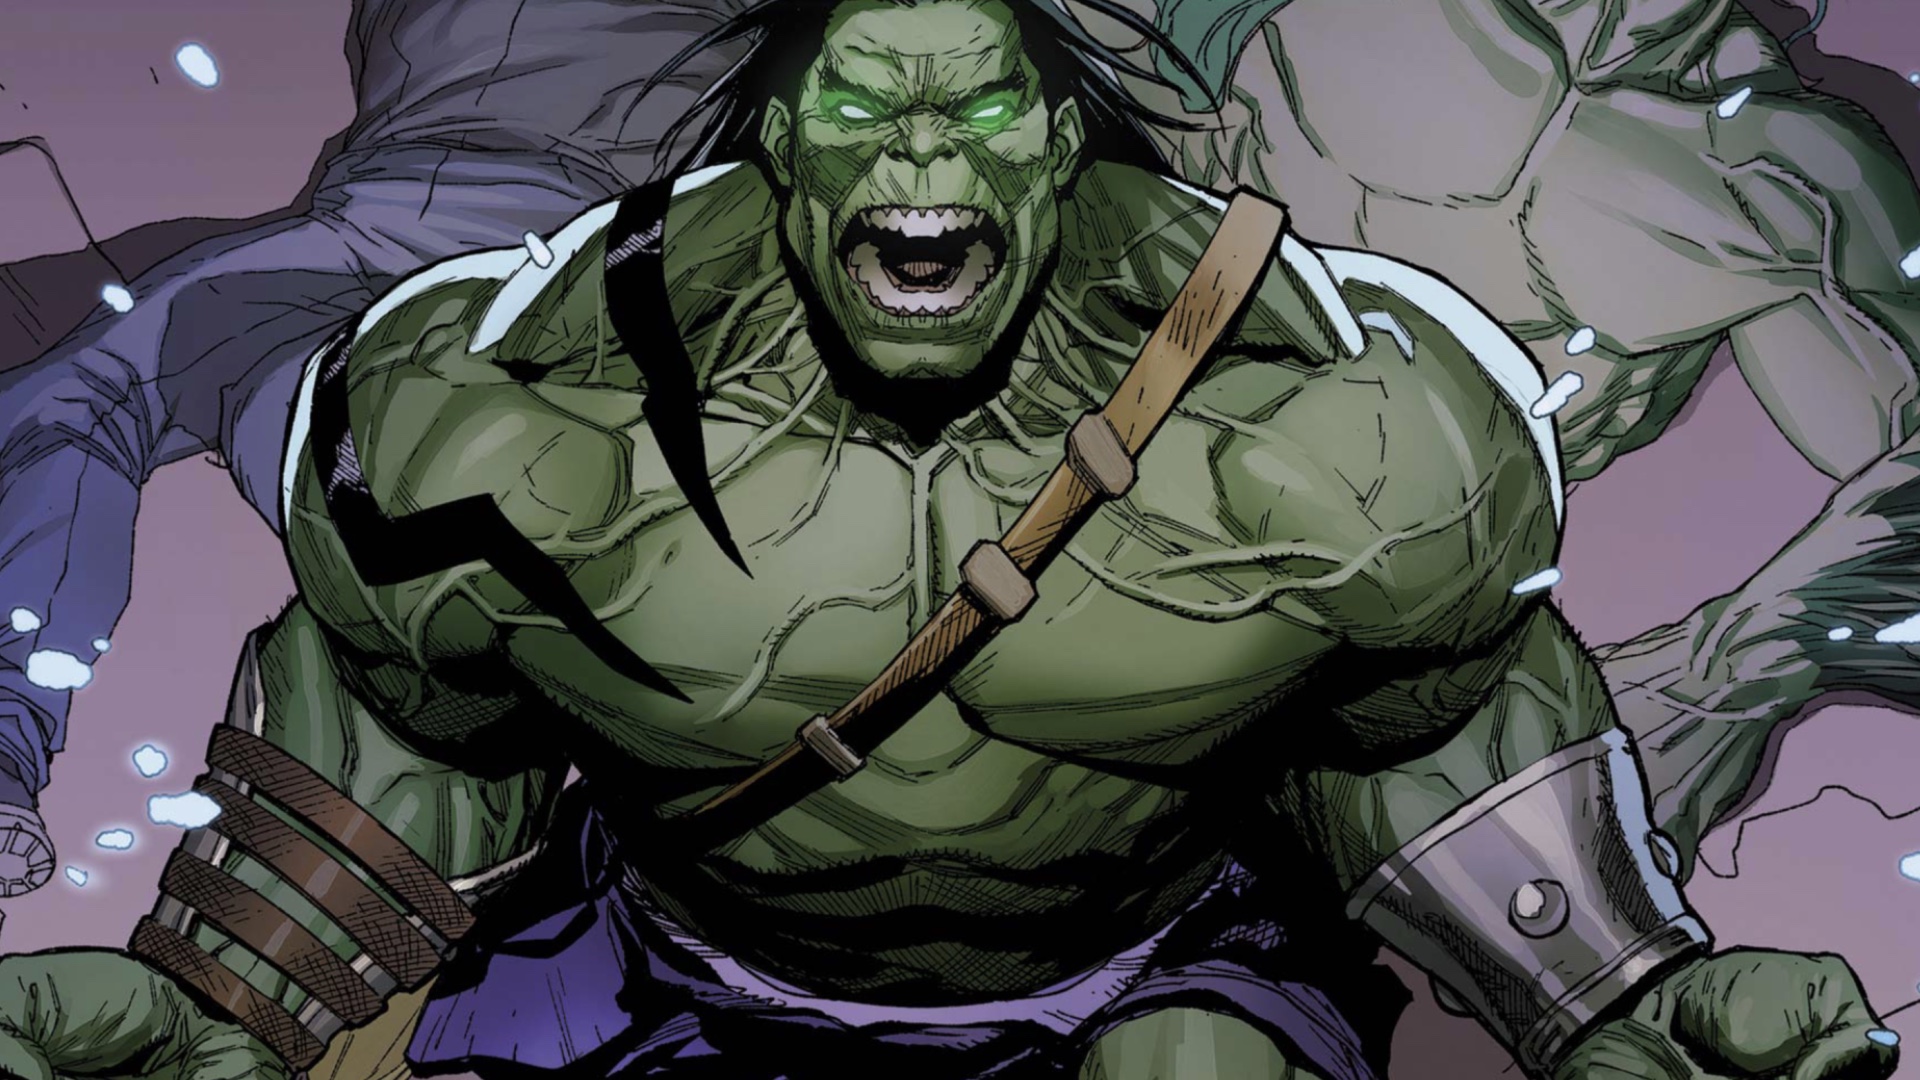 Skaar, Sohn des Hulk in den Marvel-Comics